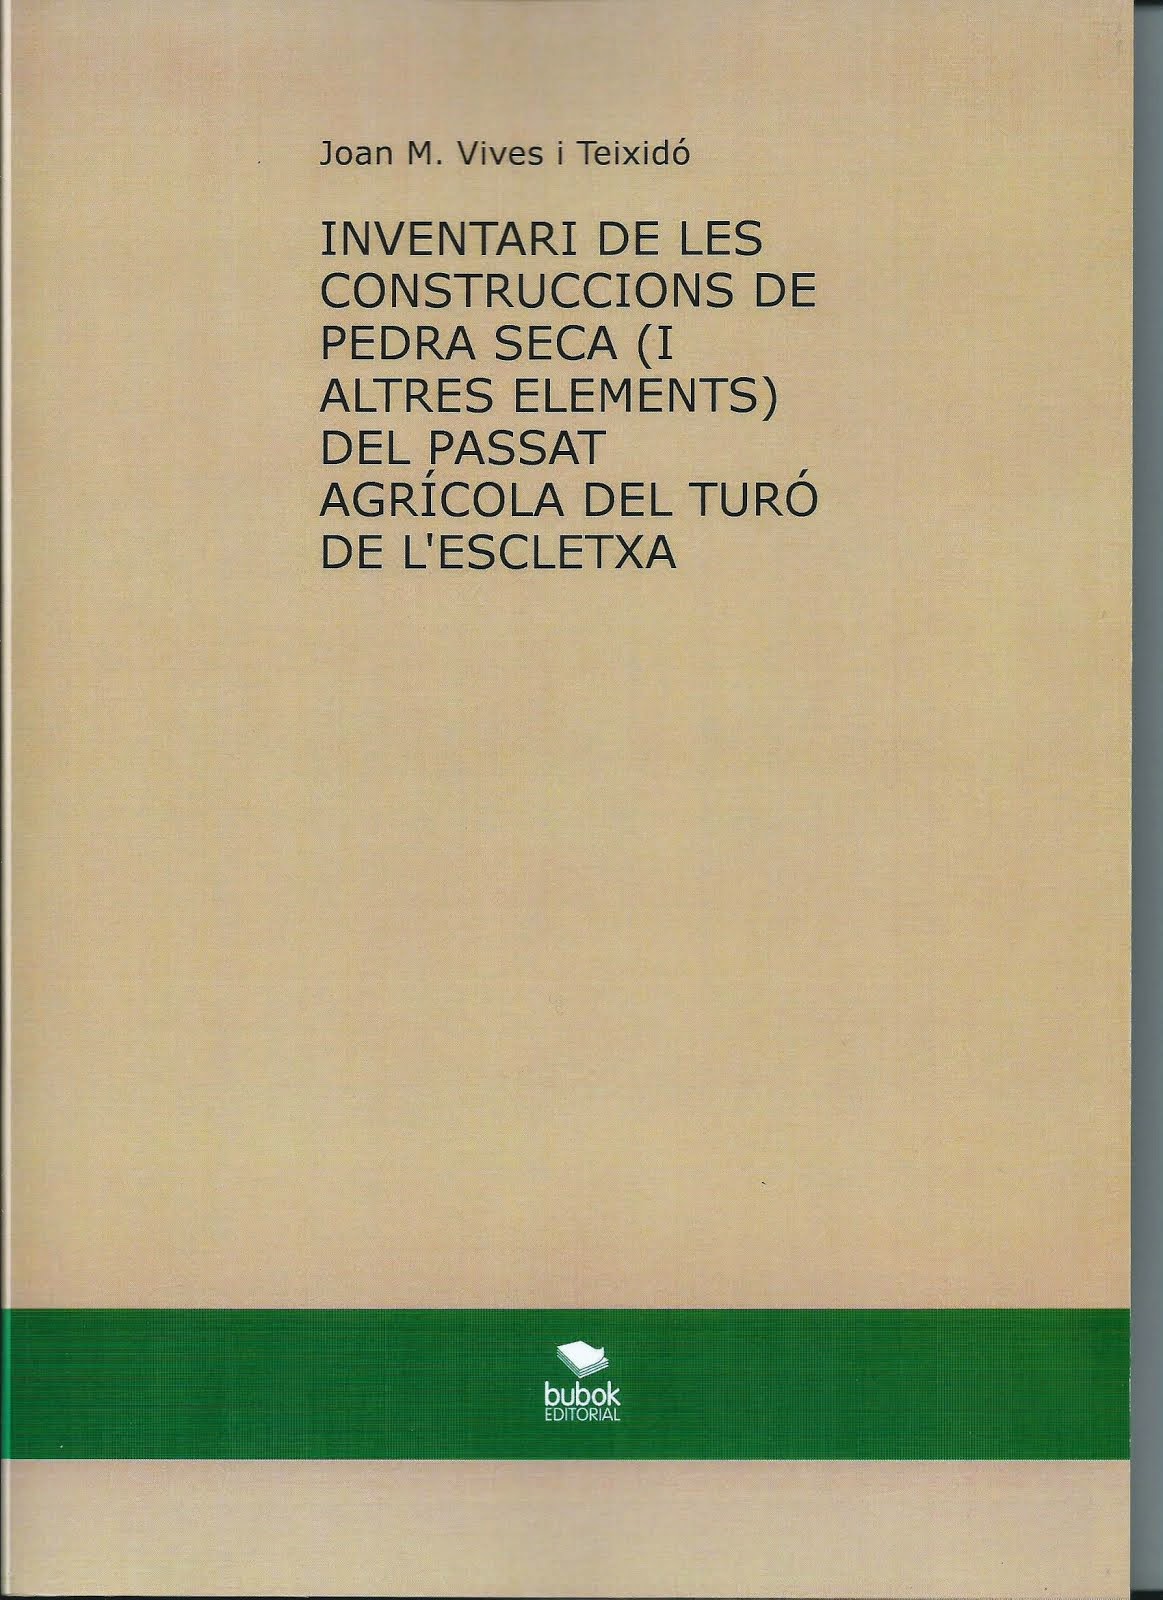 INVENTARI DE LES CONSTRUCCIONS DE PEDRA SECA DEL TURÓ DE L'ESCLETXA